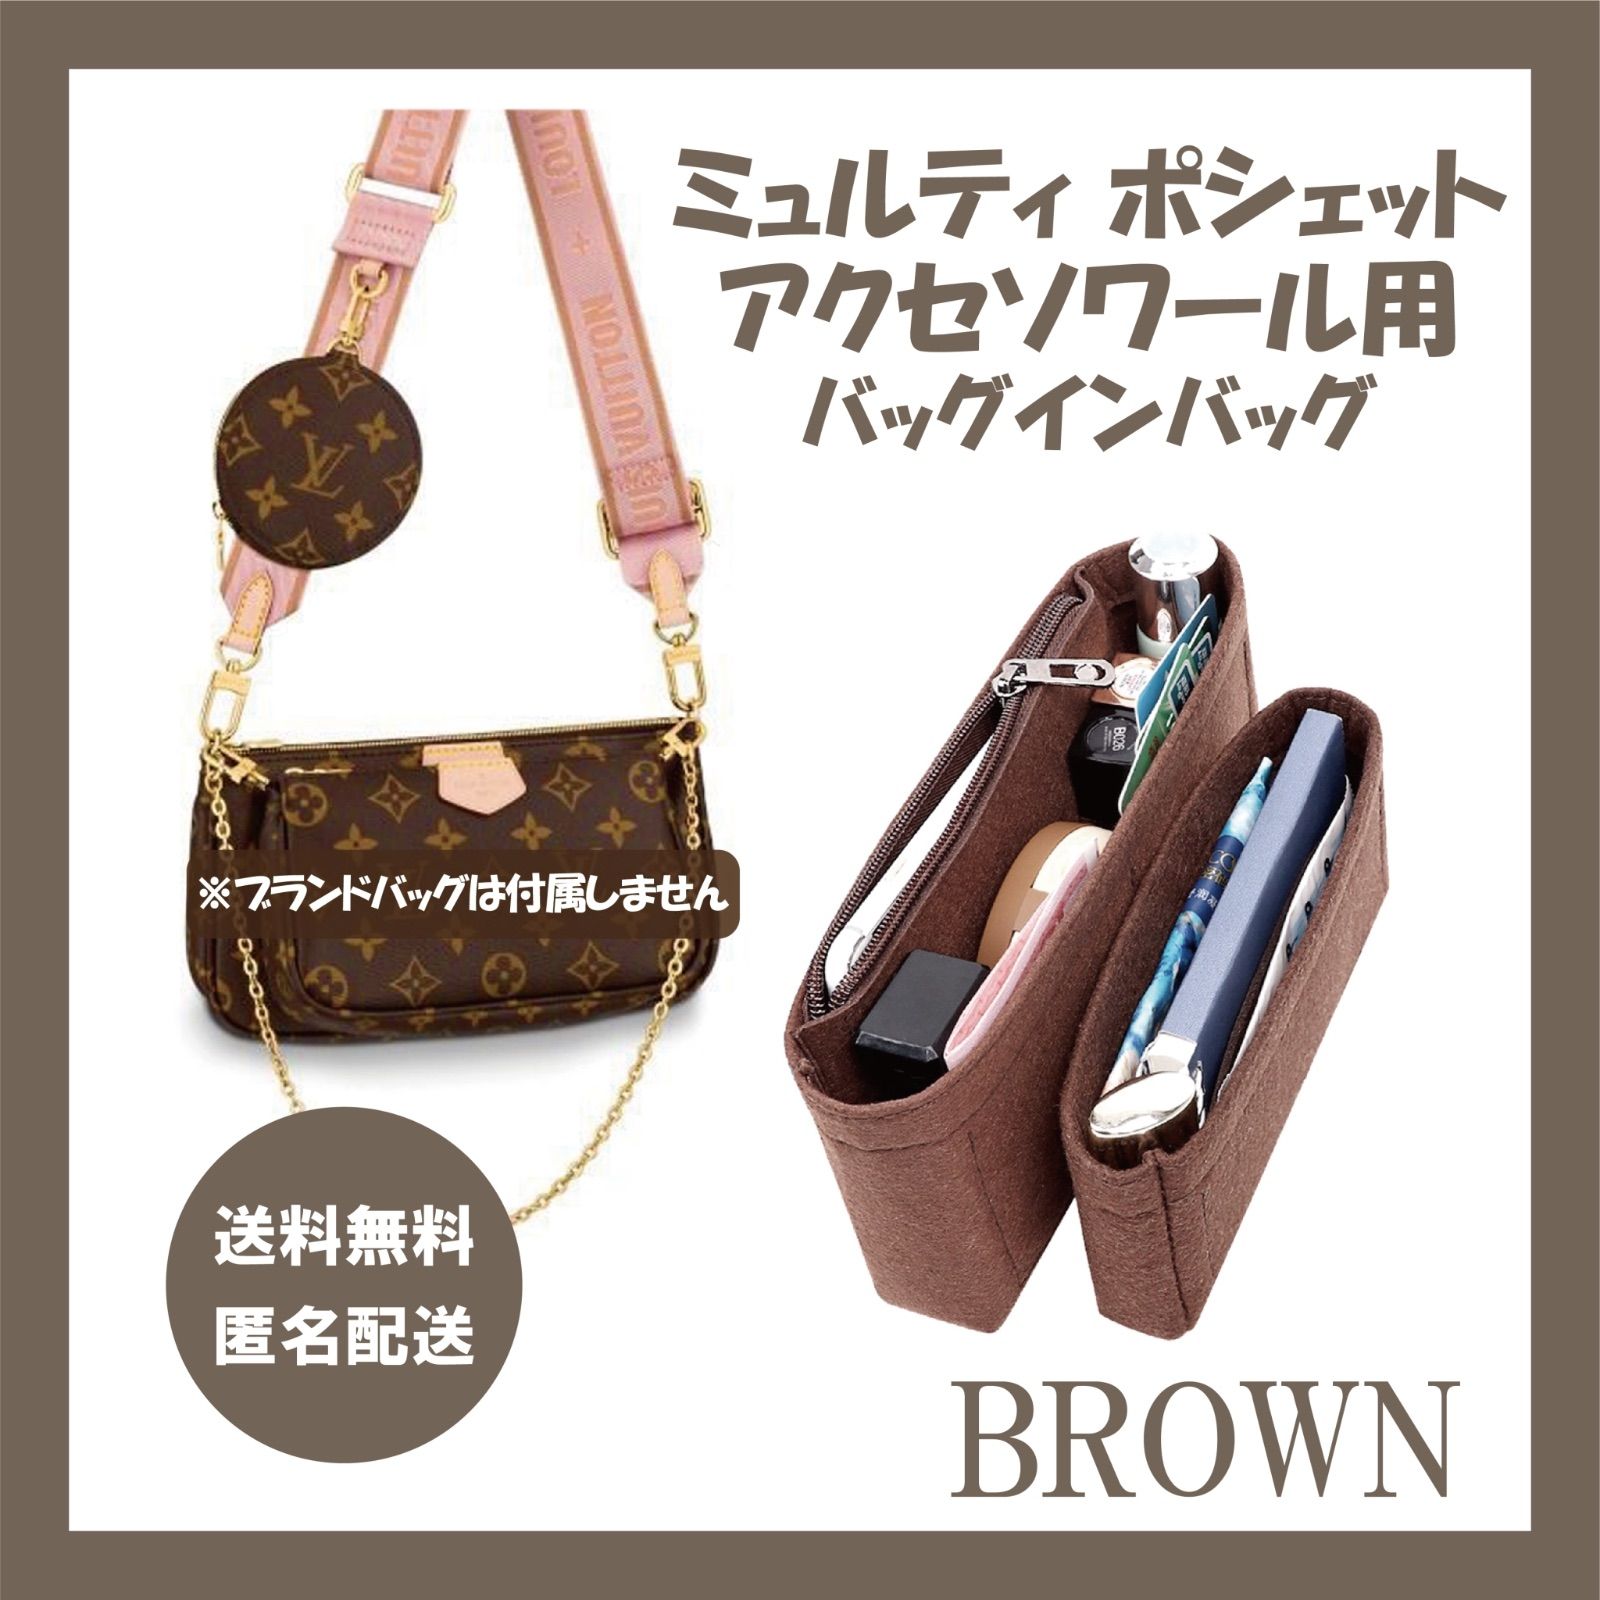 【ブラウン 】ミュルティ・ポシェット・アクセソワール専用バッグインバッグ